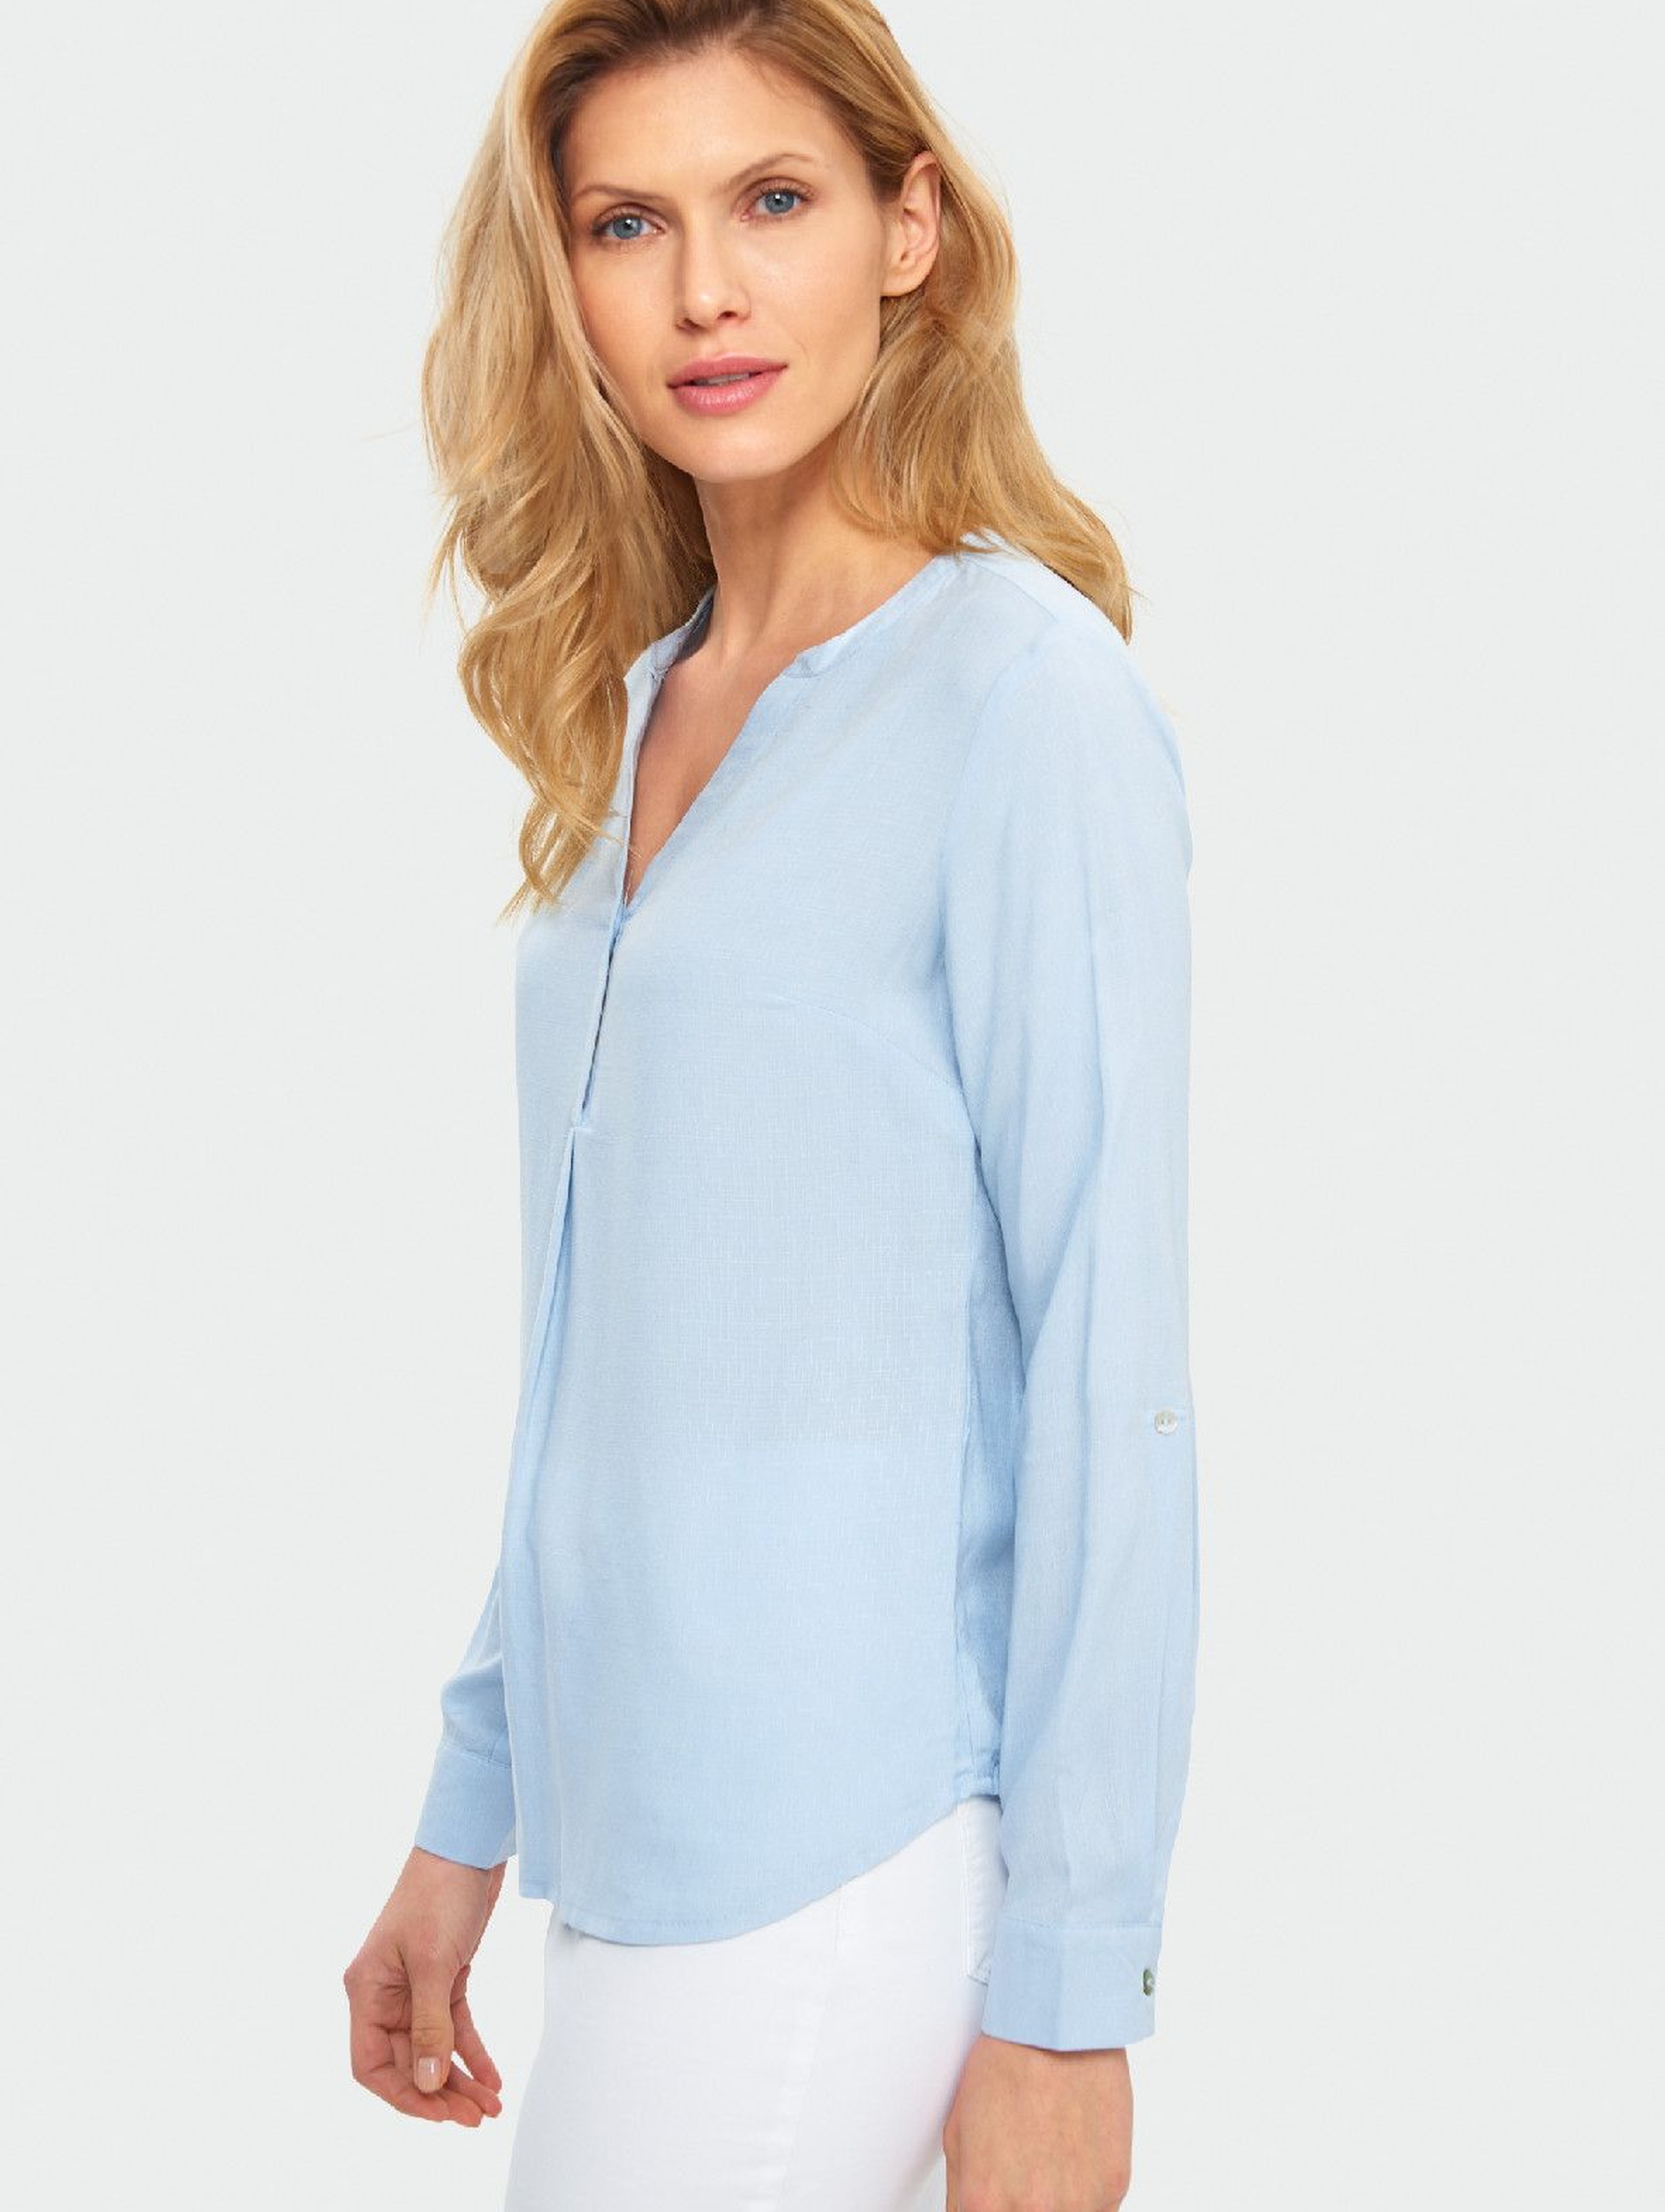 Bluzka damska koszulowa z długim rękawem-niebieska